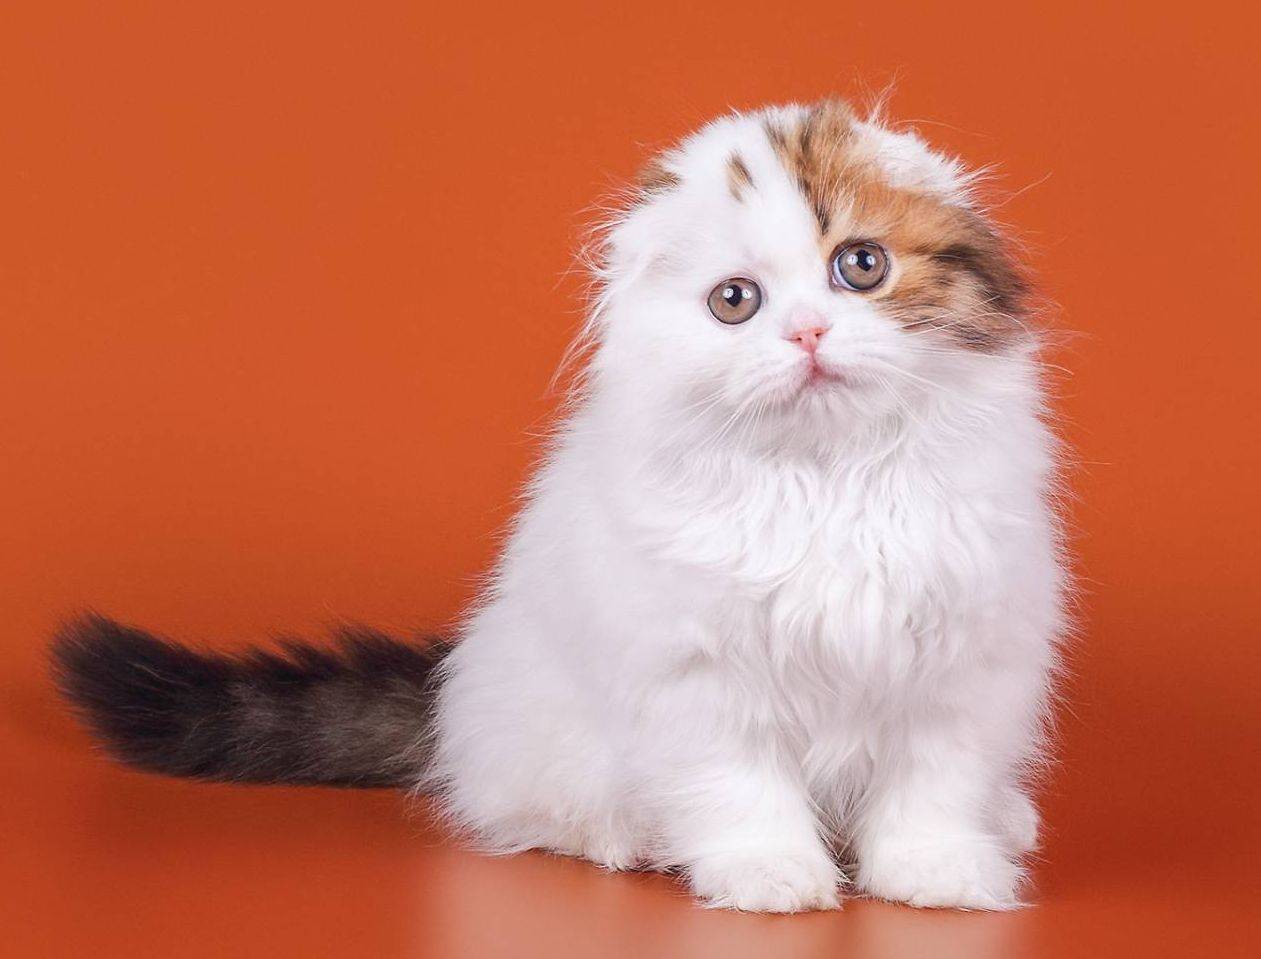 Хайленд-фолд – очаровательная вислоухая кошка с длинной шубкой родом из шотландии